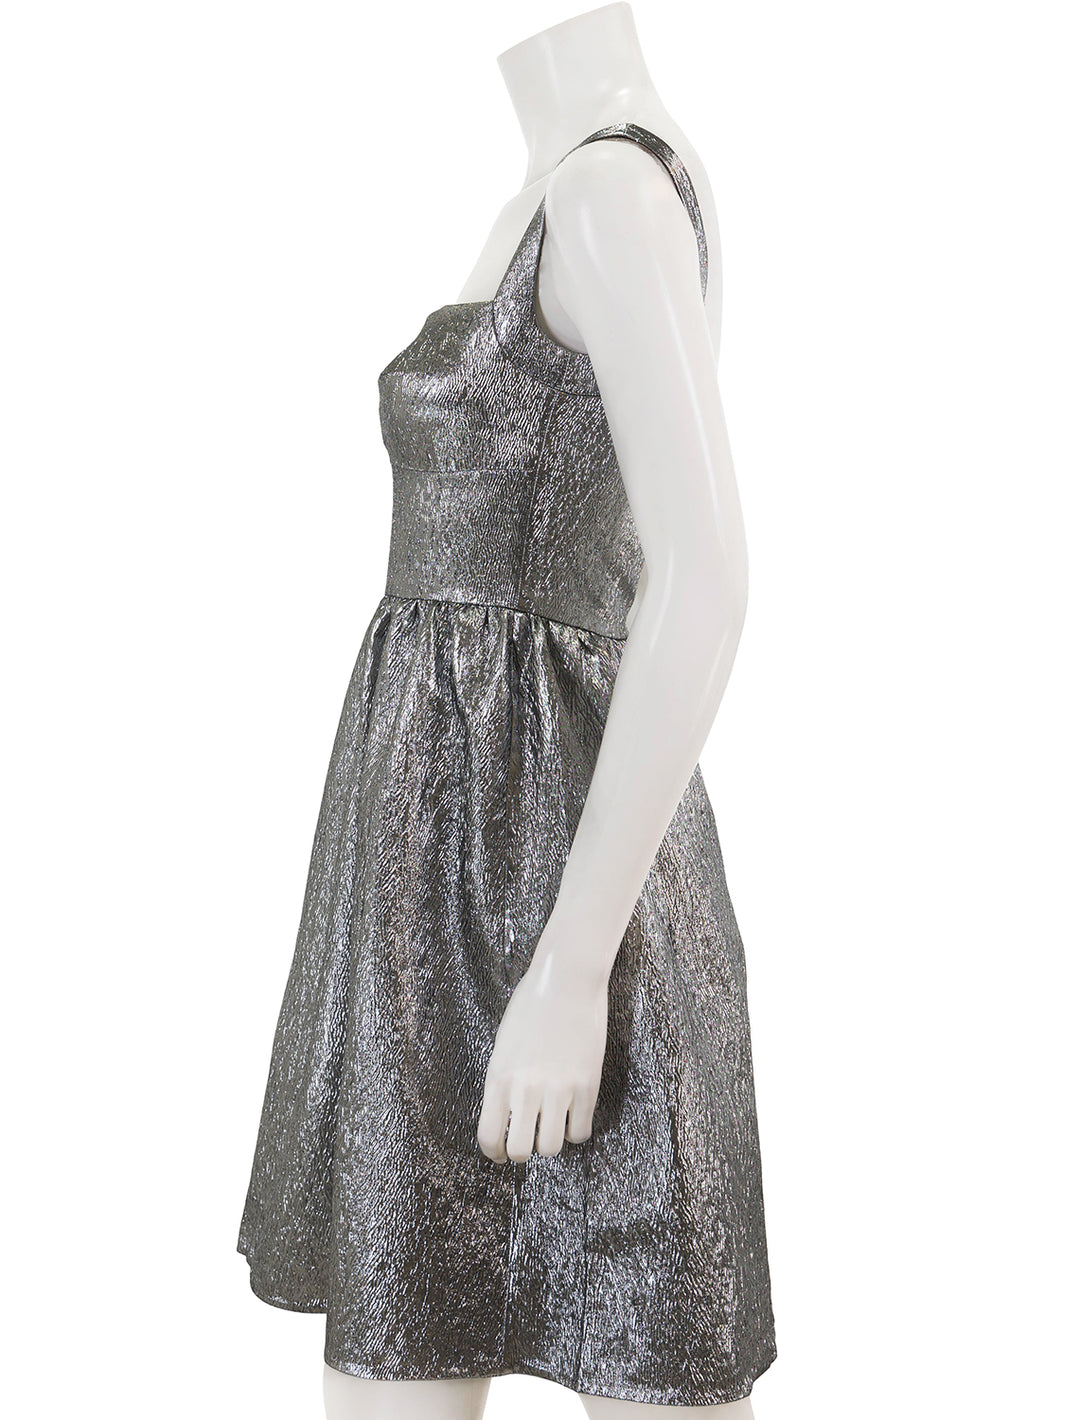 Side view of Saloni's rachel mini dress in silver.